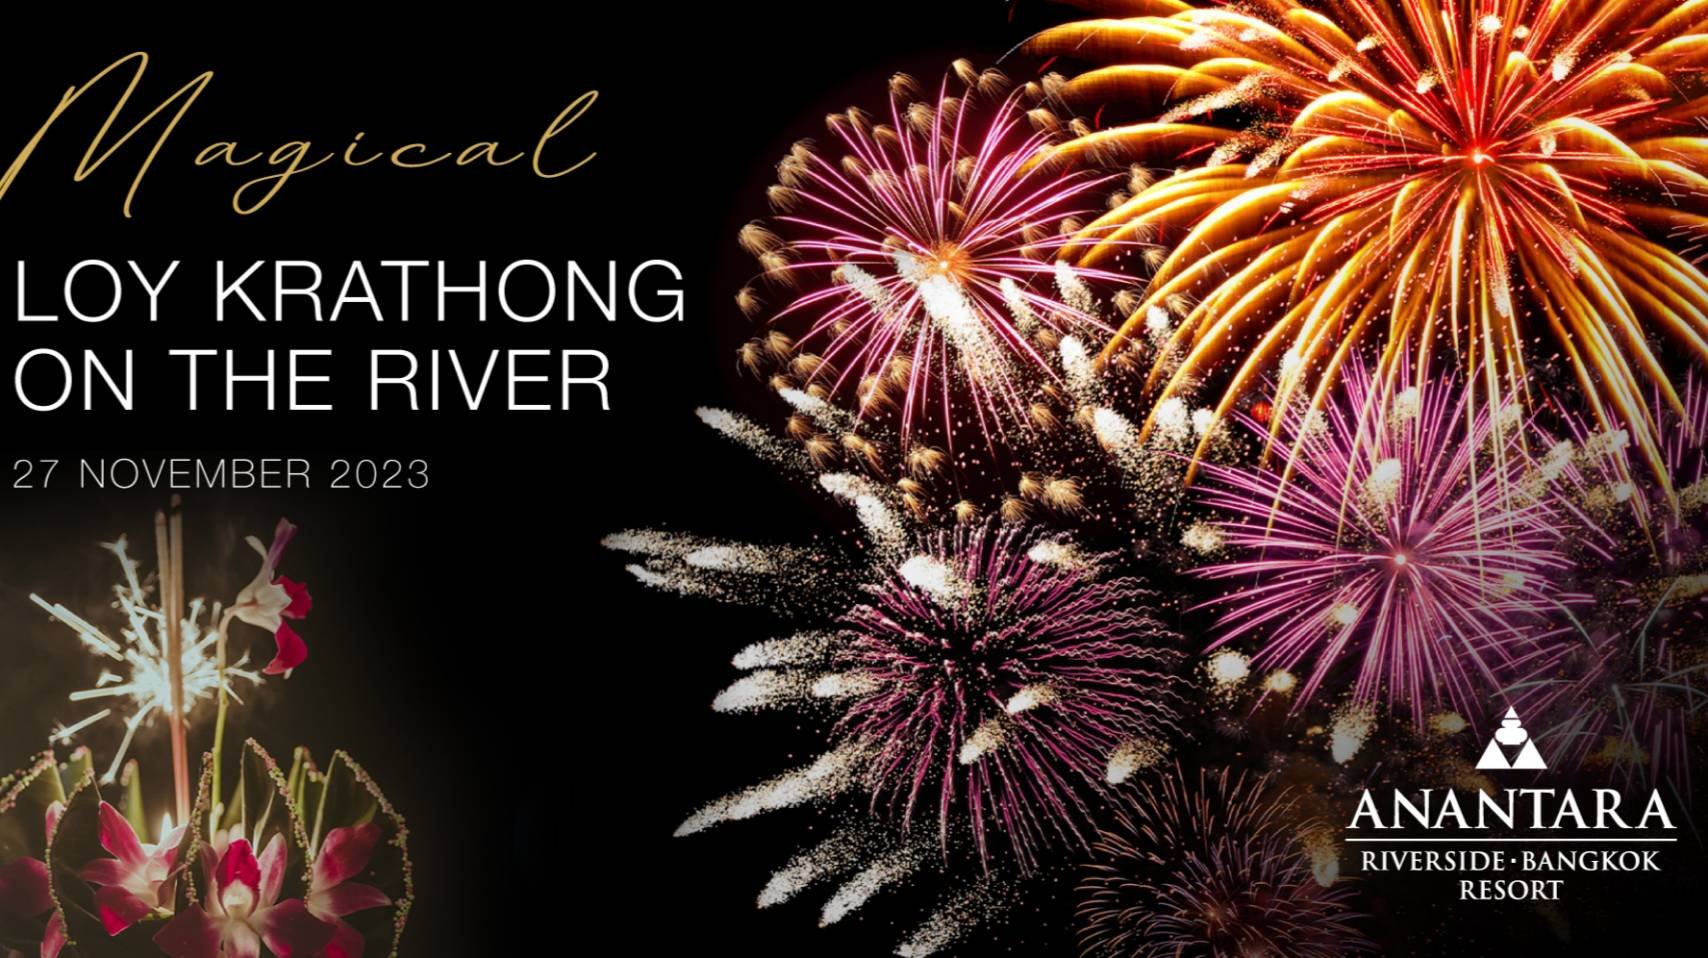 "อนันตรา ริเวอร์ไซด์ กรุงเทพฯ รีสอร์ท" ชวนคุณเต็มอิ่มกับบุฟเฟ่ต์มื้อค่ำ ในงาน “Magical Loy Krathong on the River”